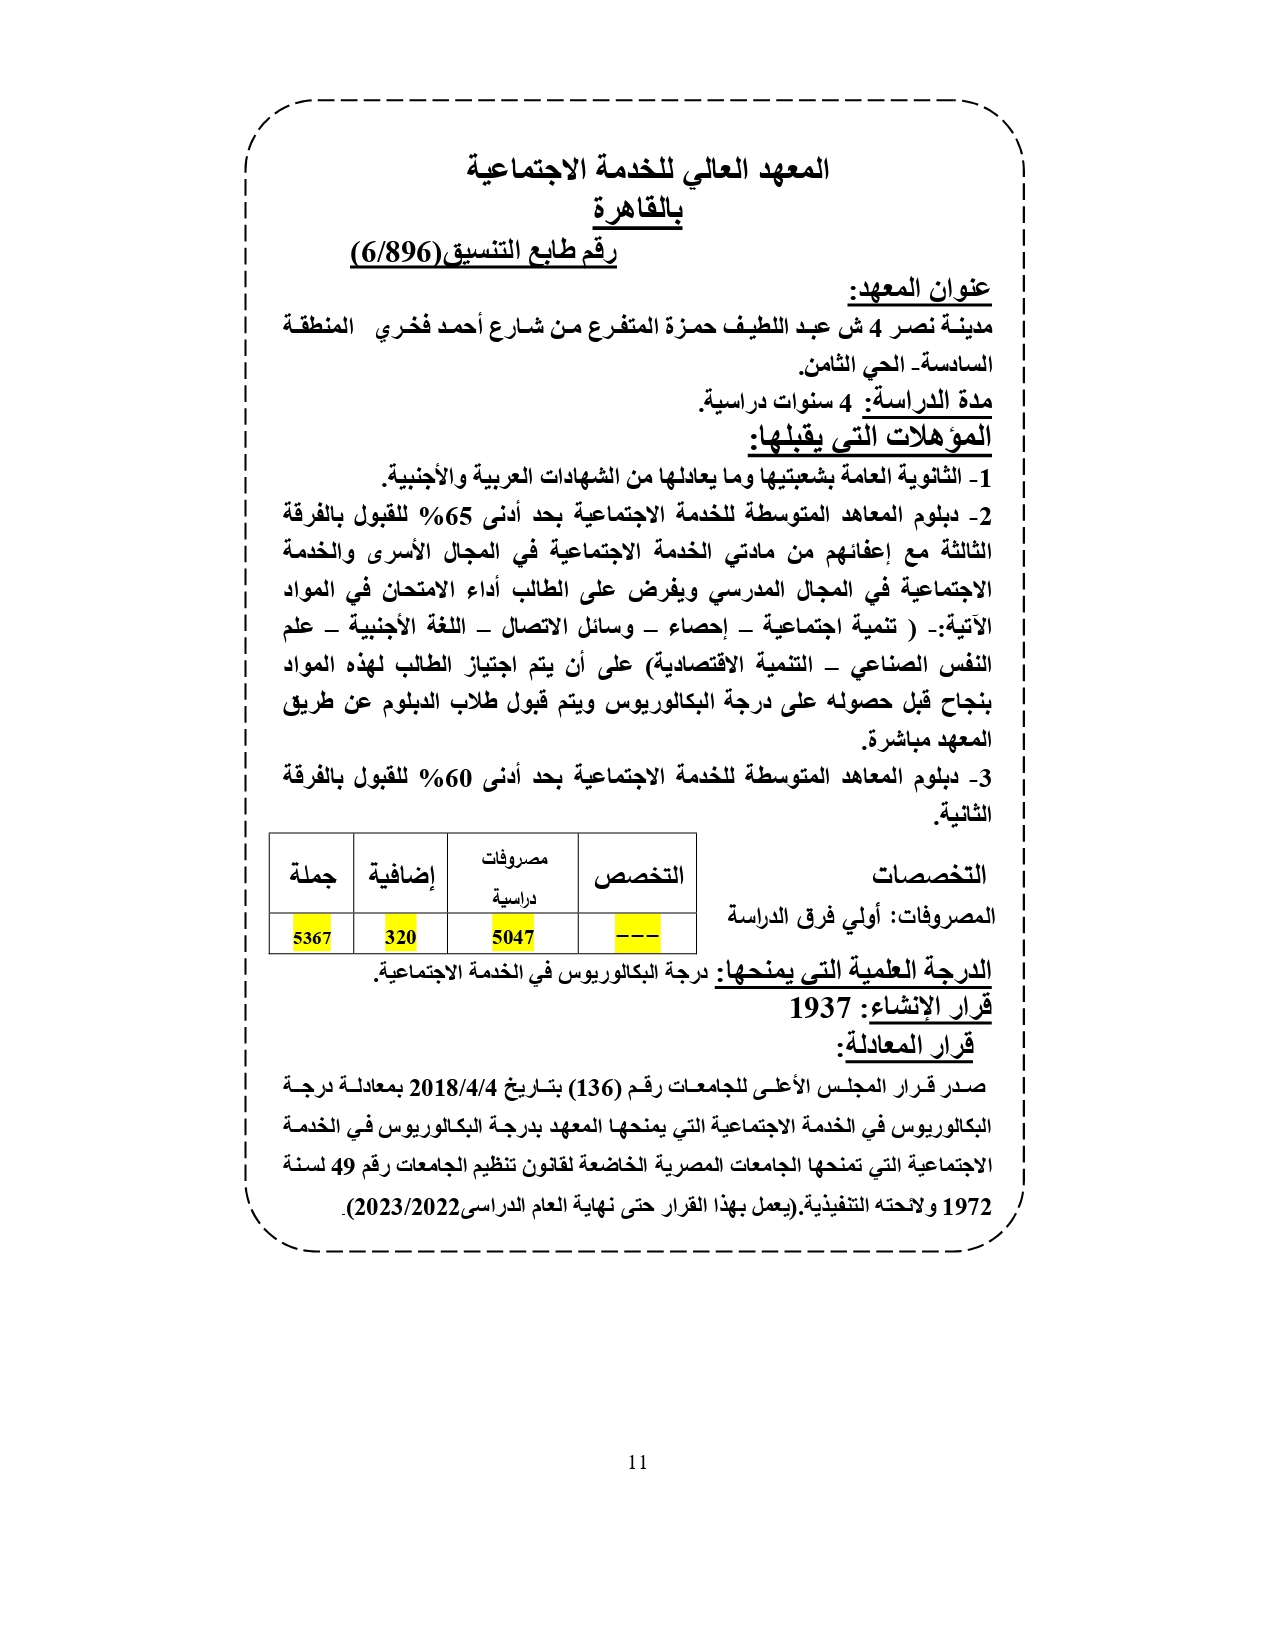 المعهد العالي للخدمة الاجتماعية بالقاهرة «مصروفات ومعلومات»